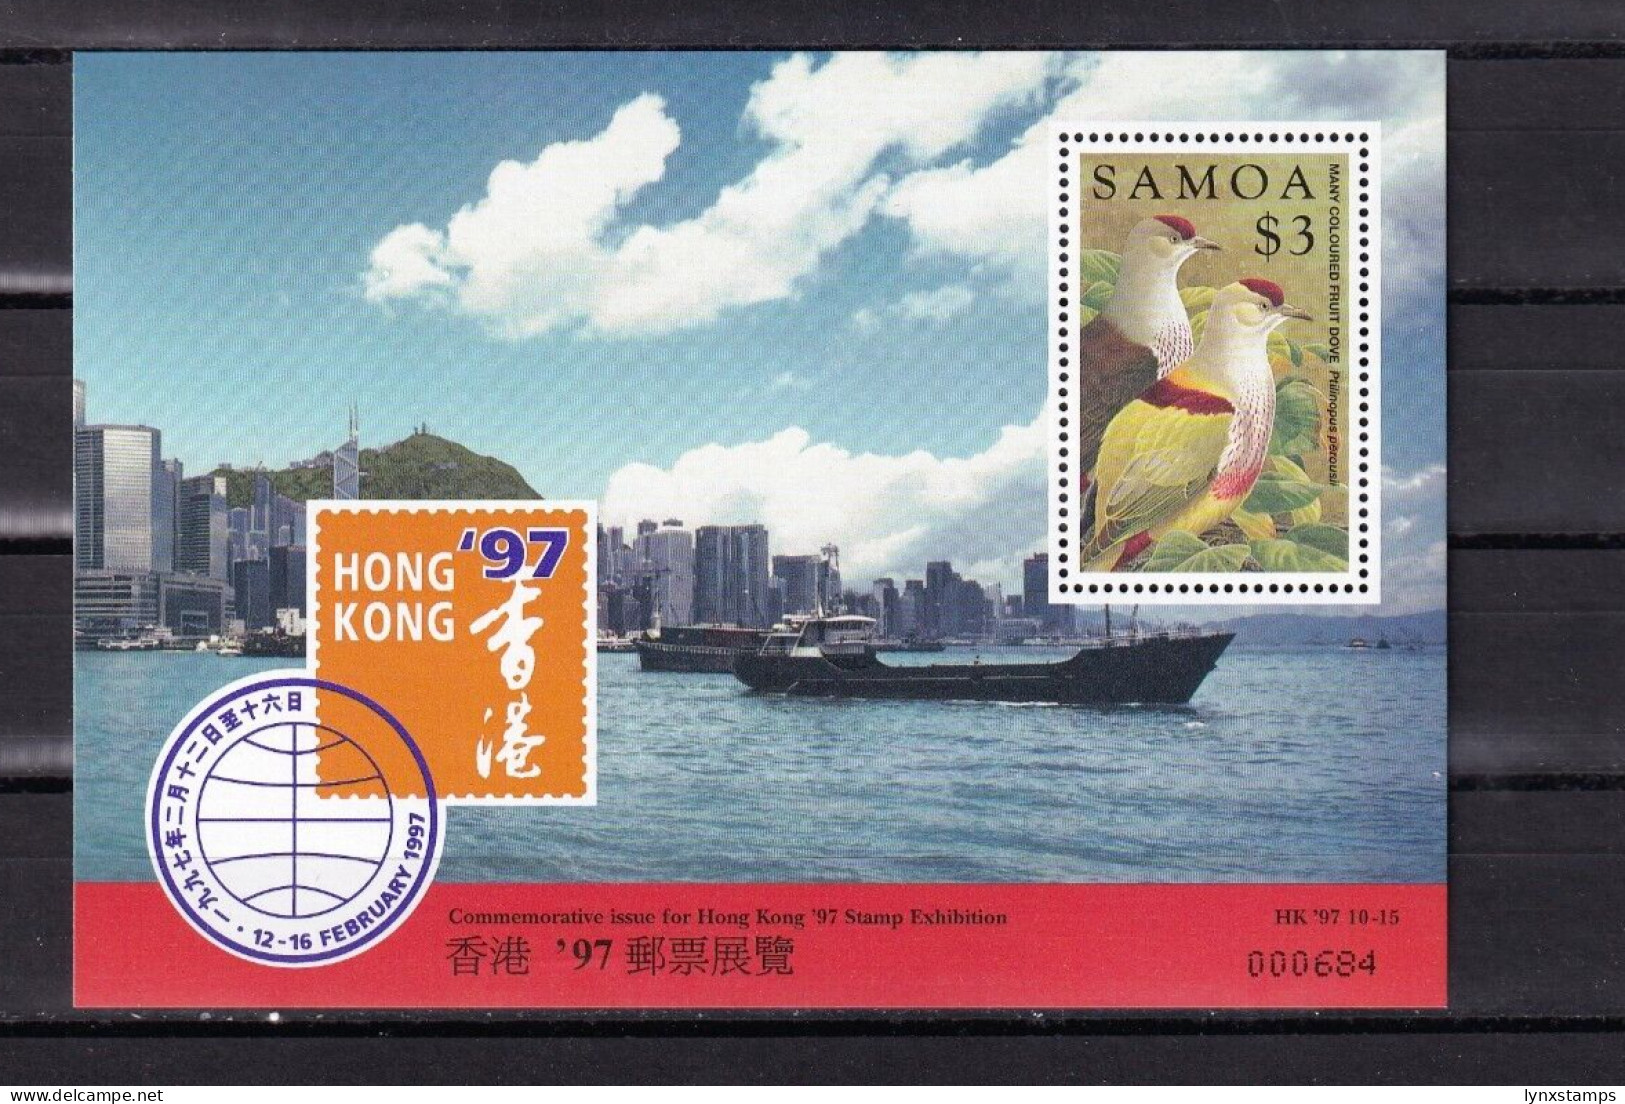 SA02 Samoa 1997 International Stamp Exhibition "HONG KONG '97" Mini Sheet - Samoa